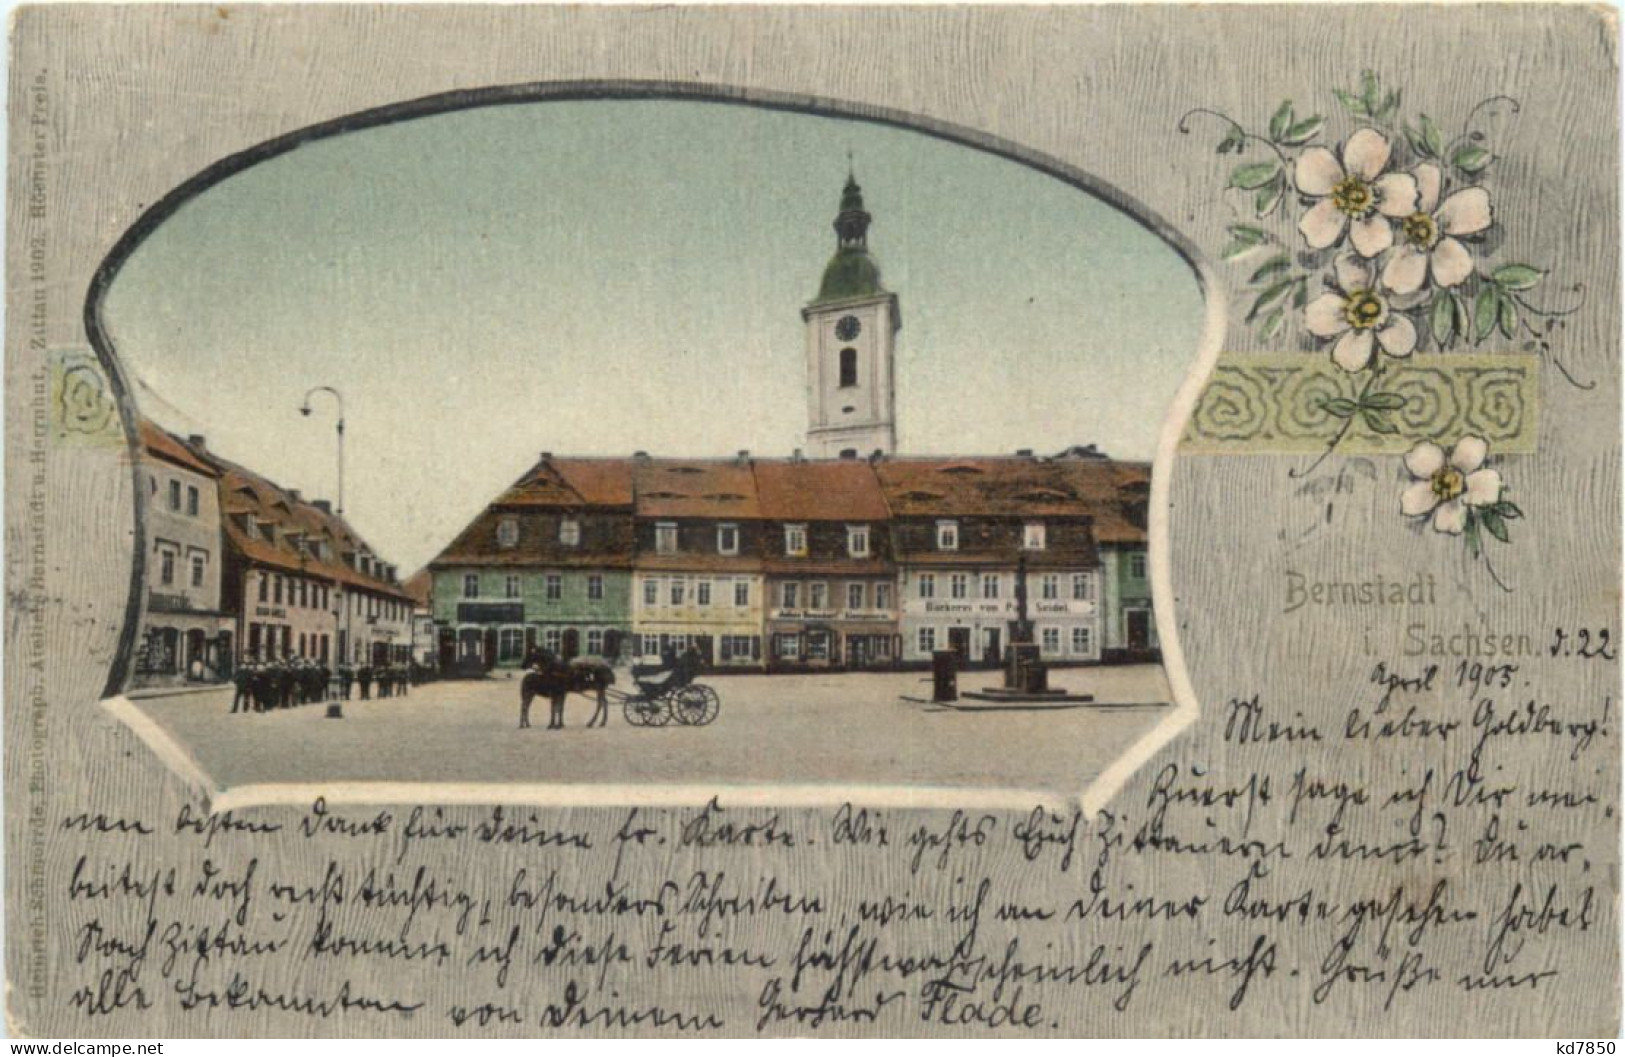 Bernstadt In Sachsen - Goerlitz